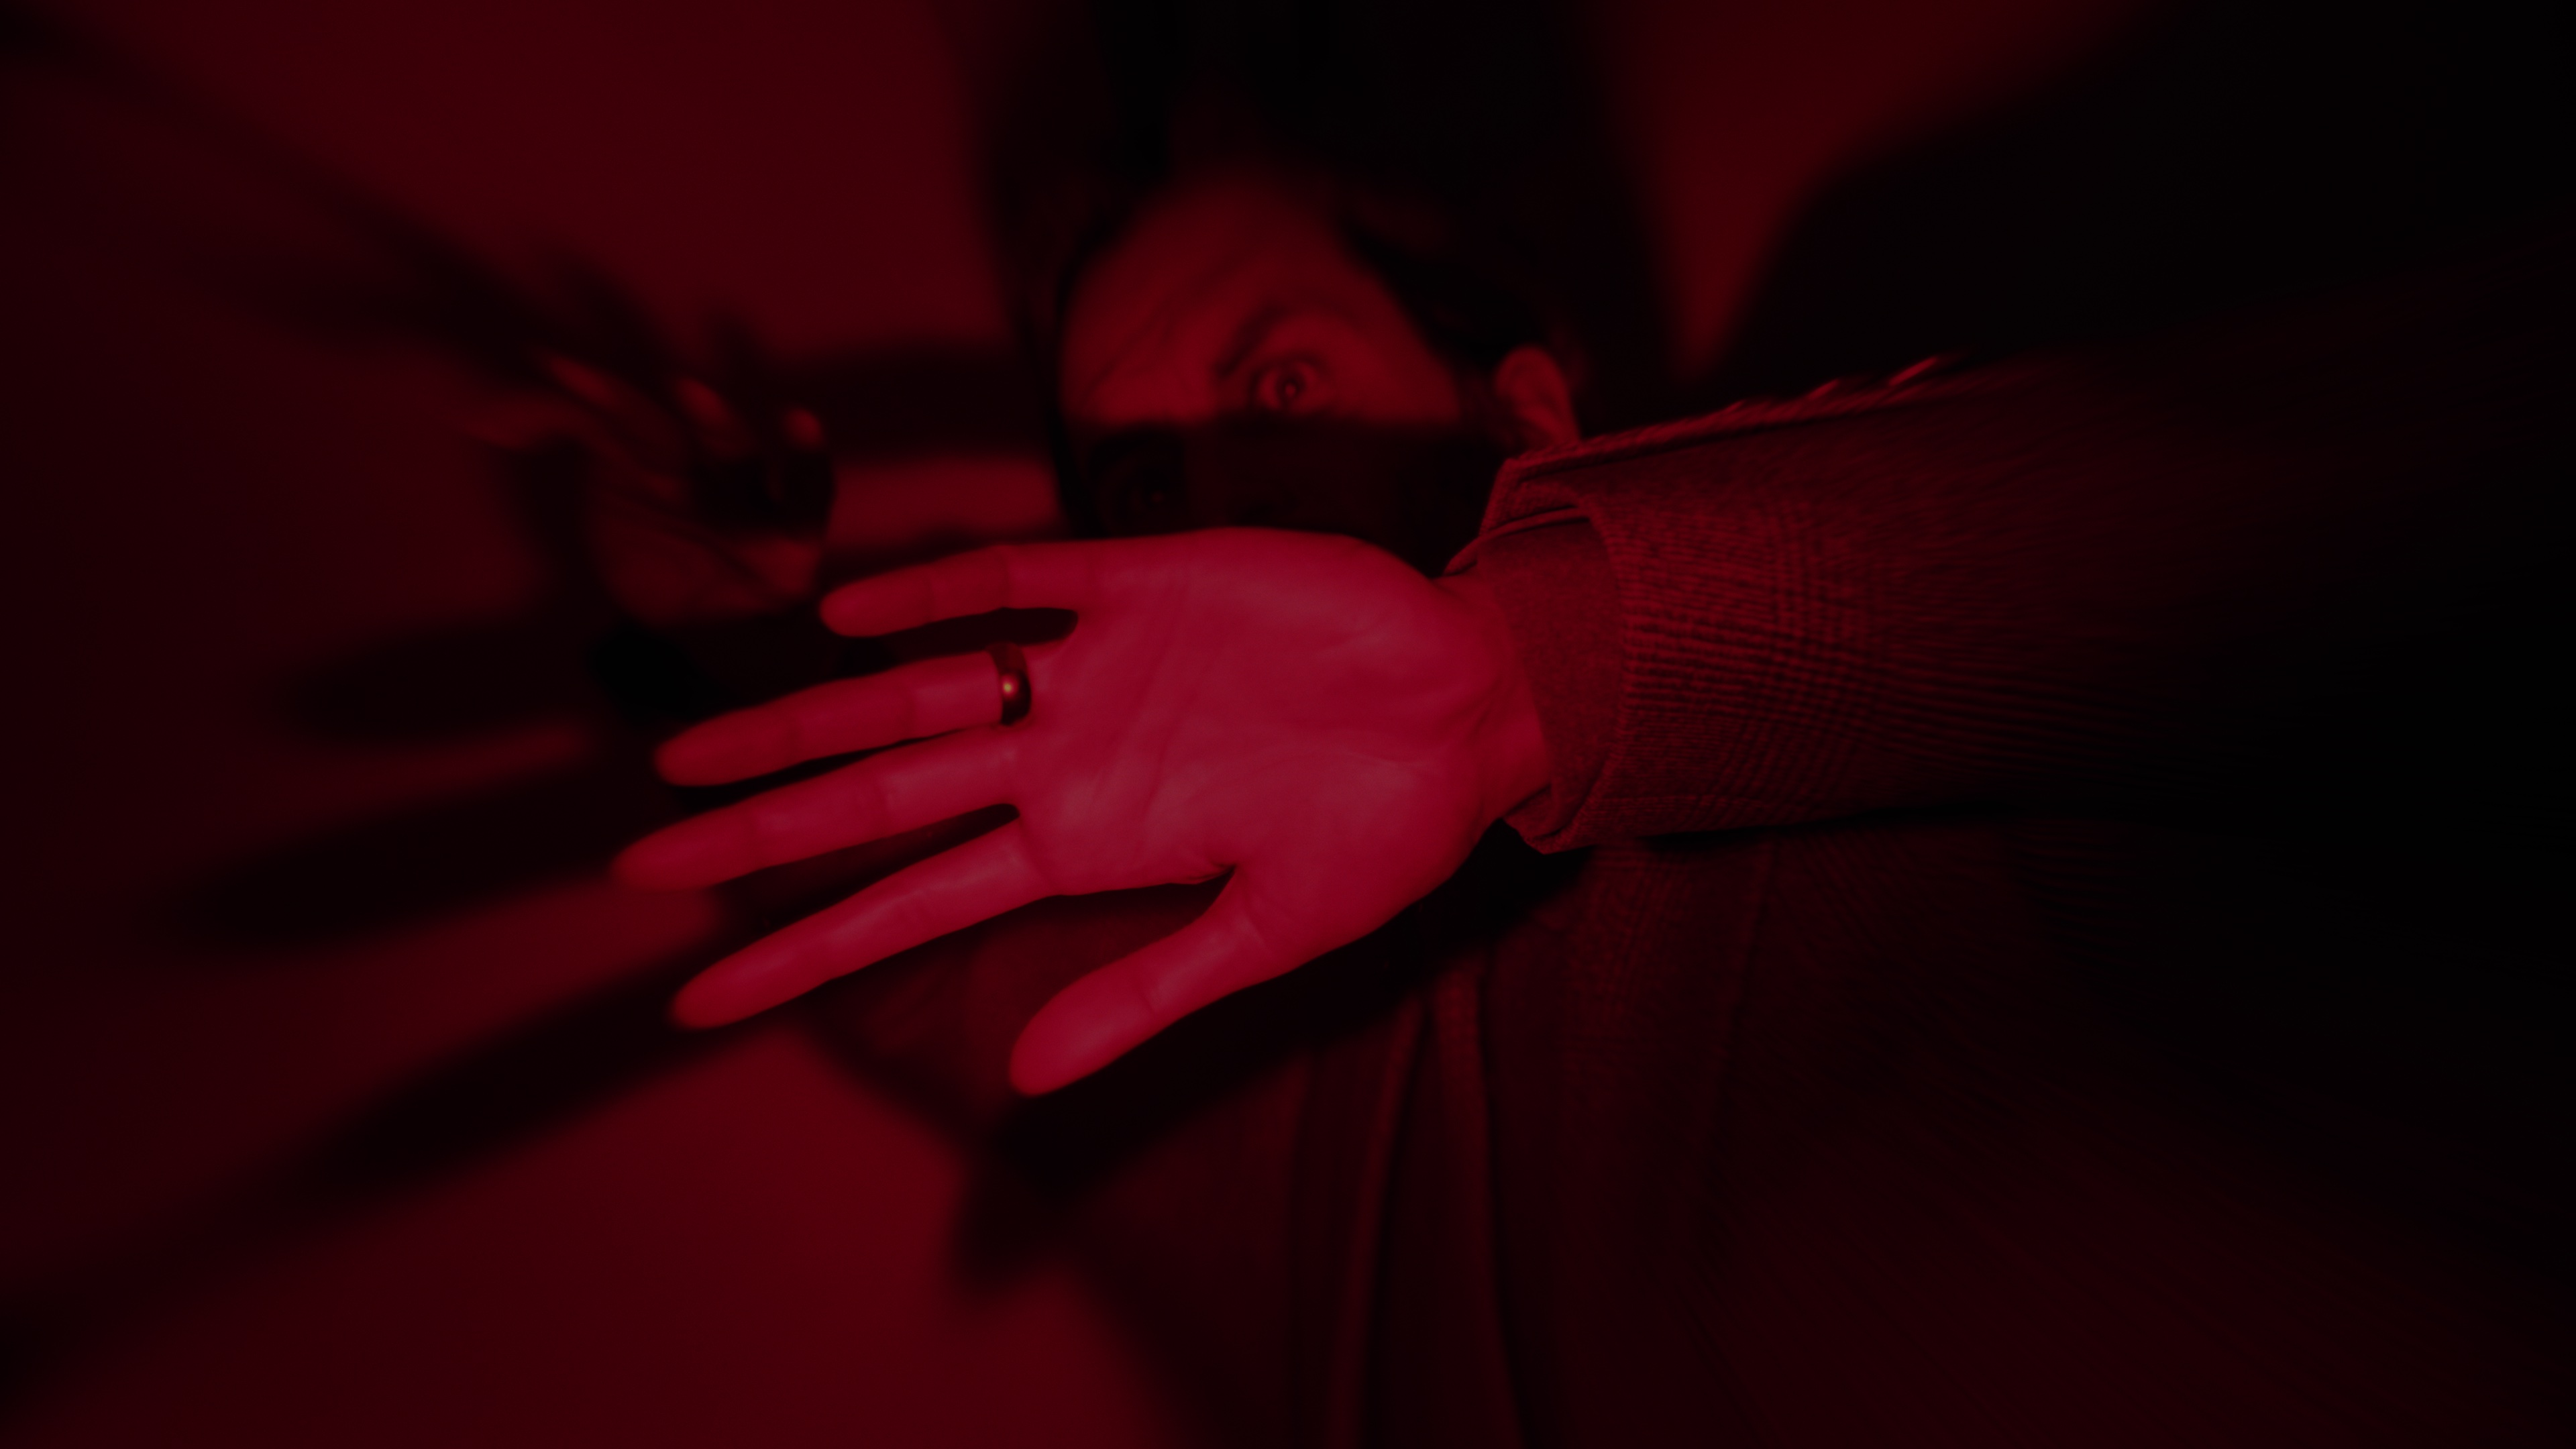 لقطة شاشة آلان ويك 2 التي تظهر آلان محاصرة في مكان الظلام تحت ضوء أحمر